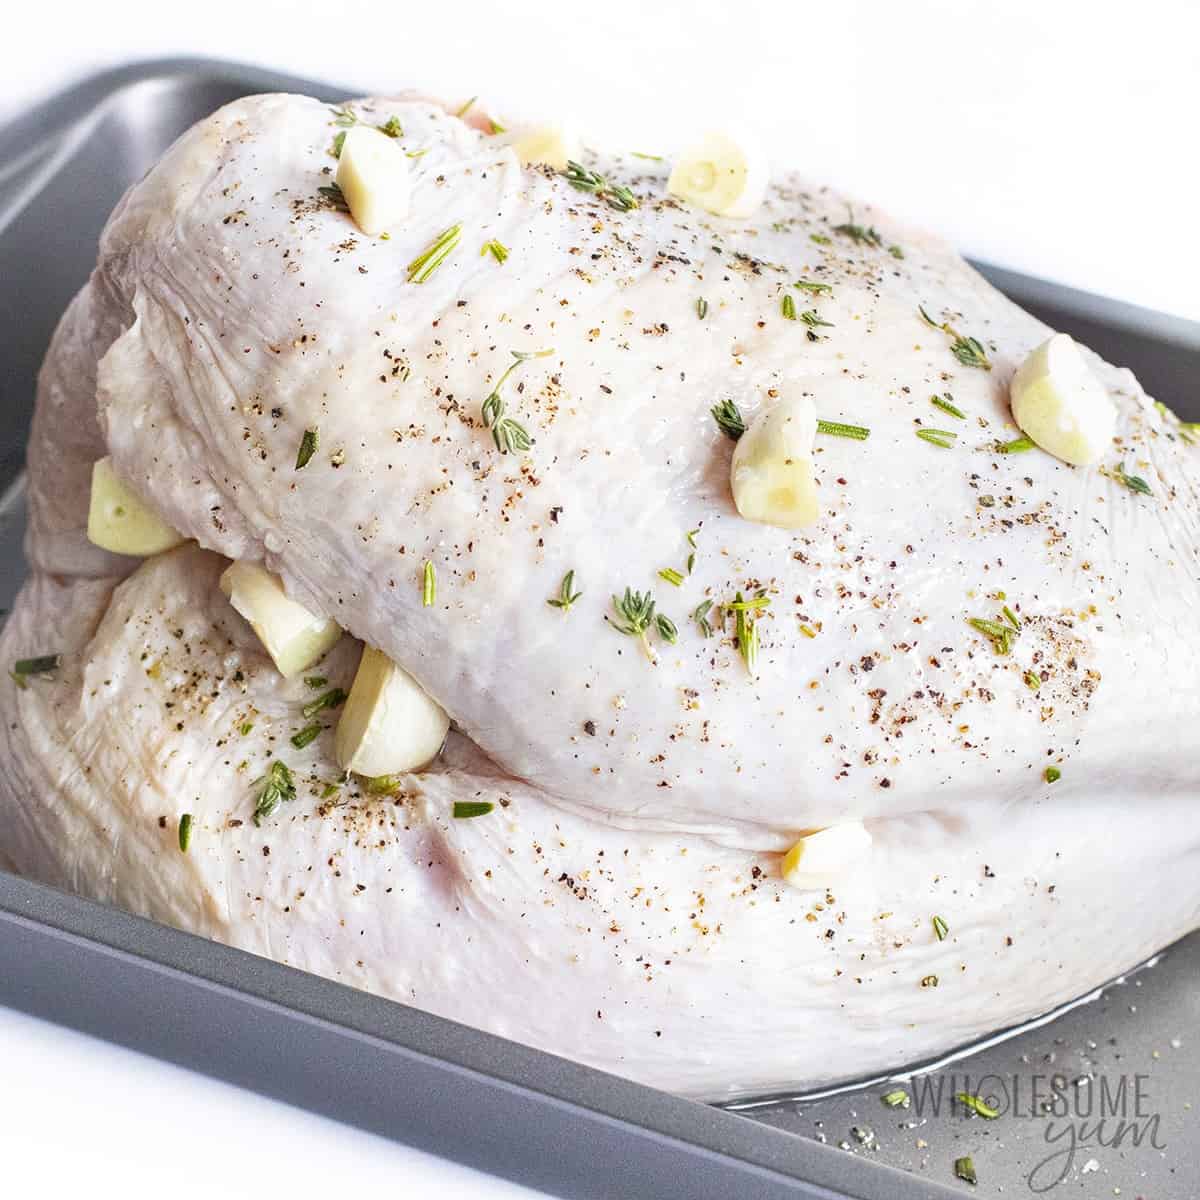 Turkey breast in air fryer before cooking